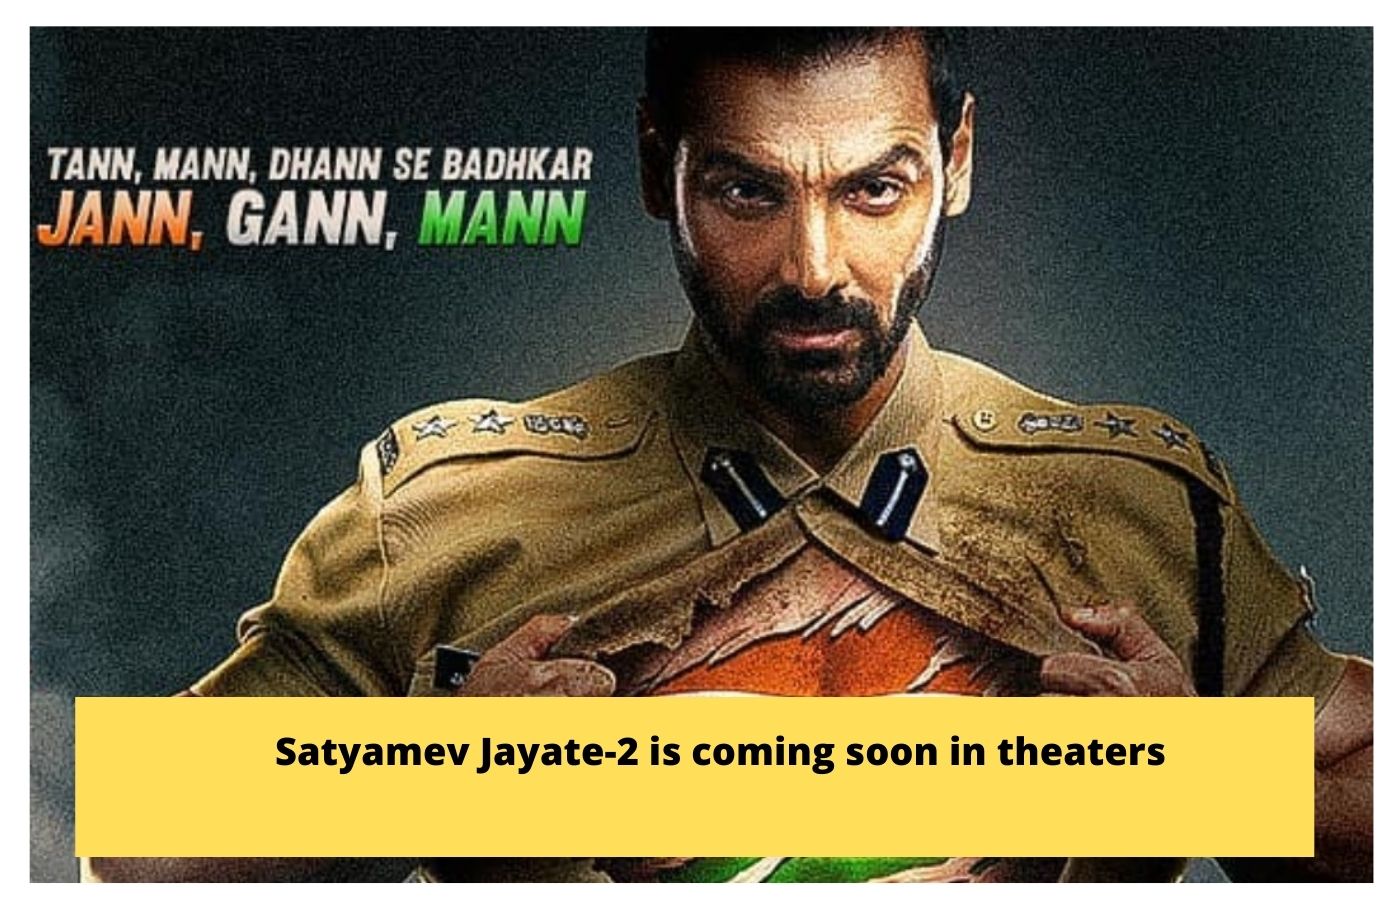 Satyamev Jayate-2 is coming soon in theaters